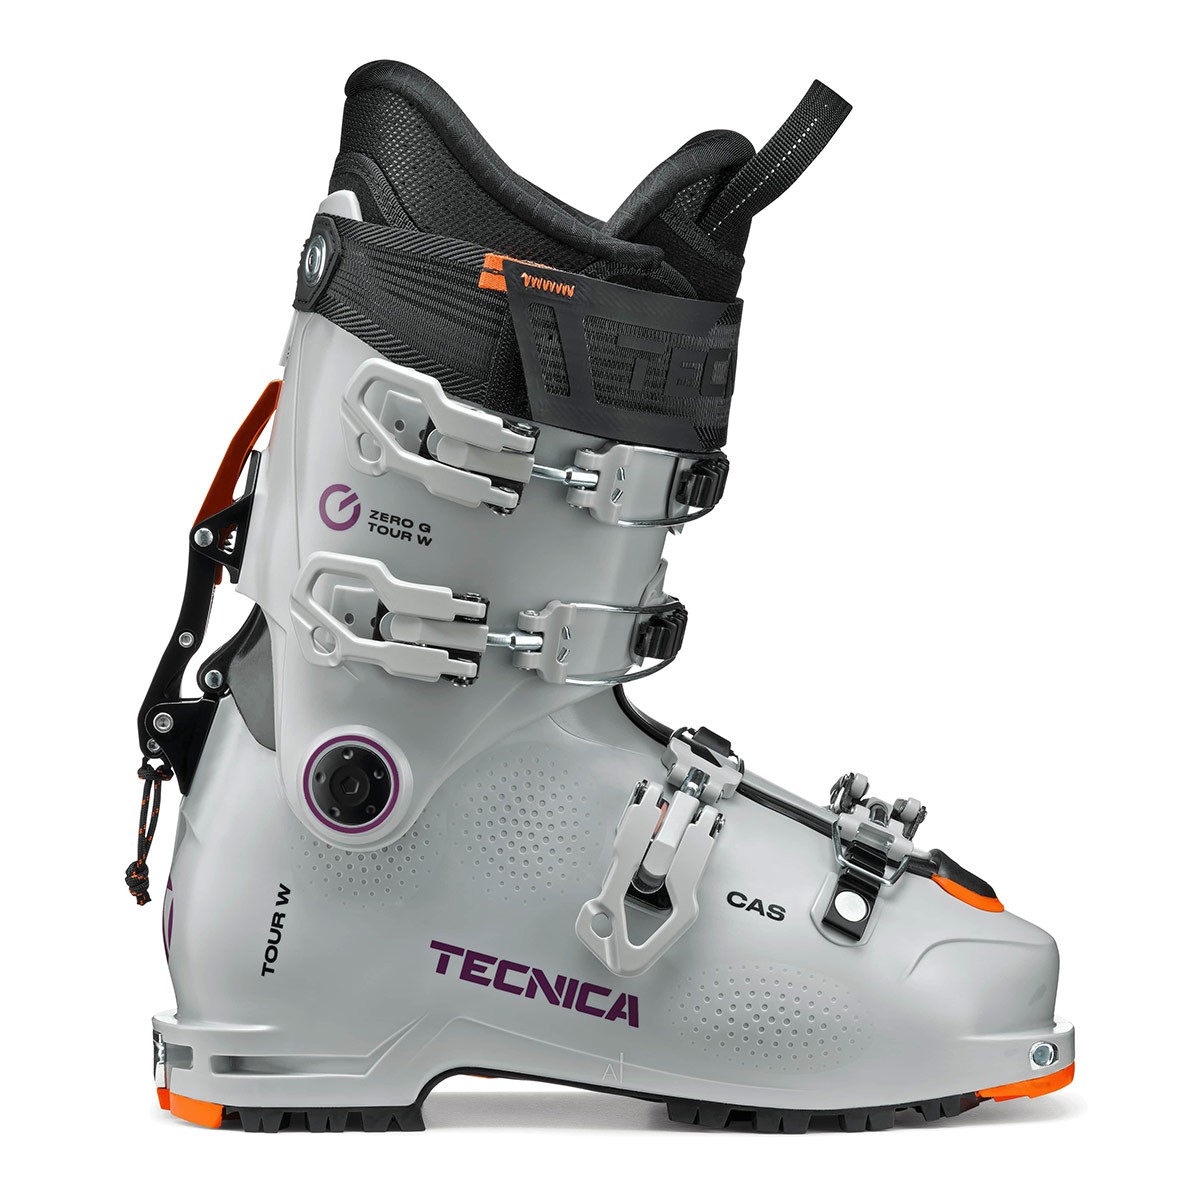  Scarponi alpinismo Tecnica Zero G Tour W (Colore: cool grey, Taglia: 23.5) 